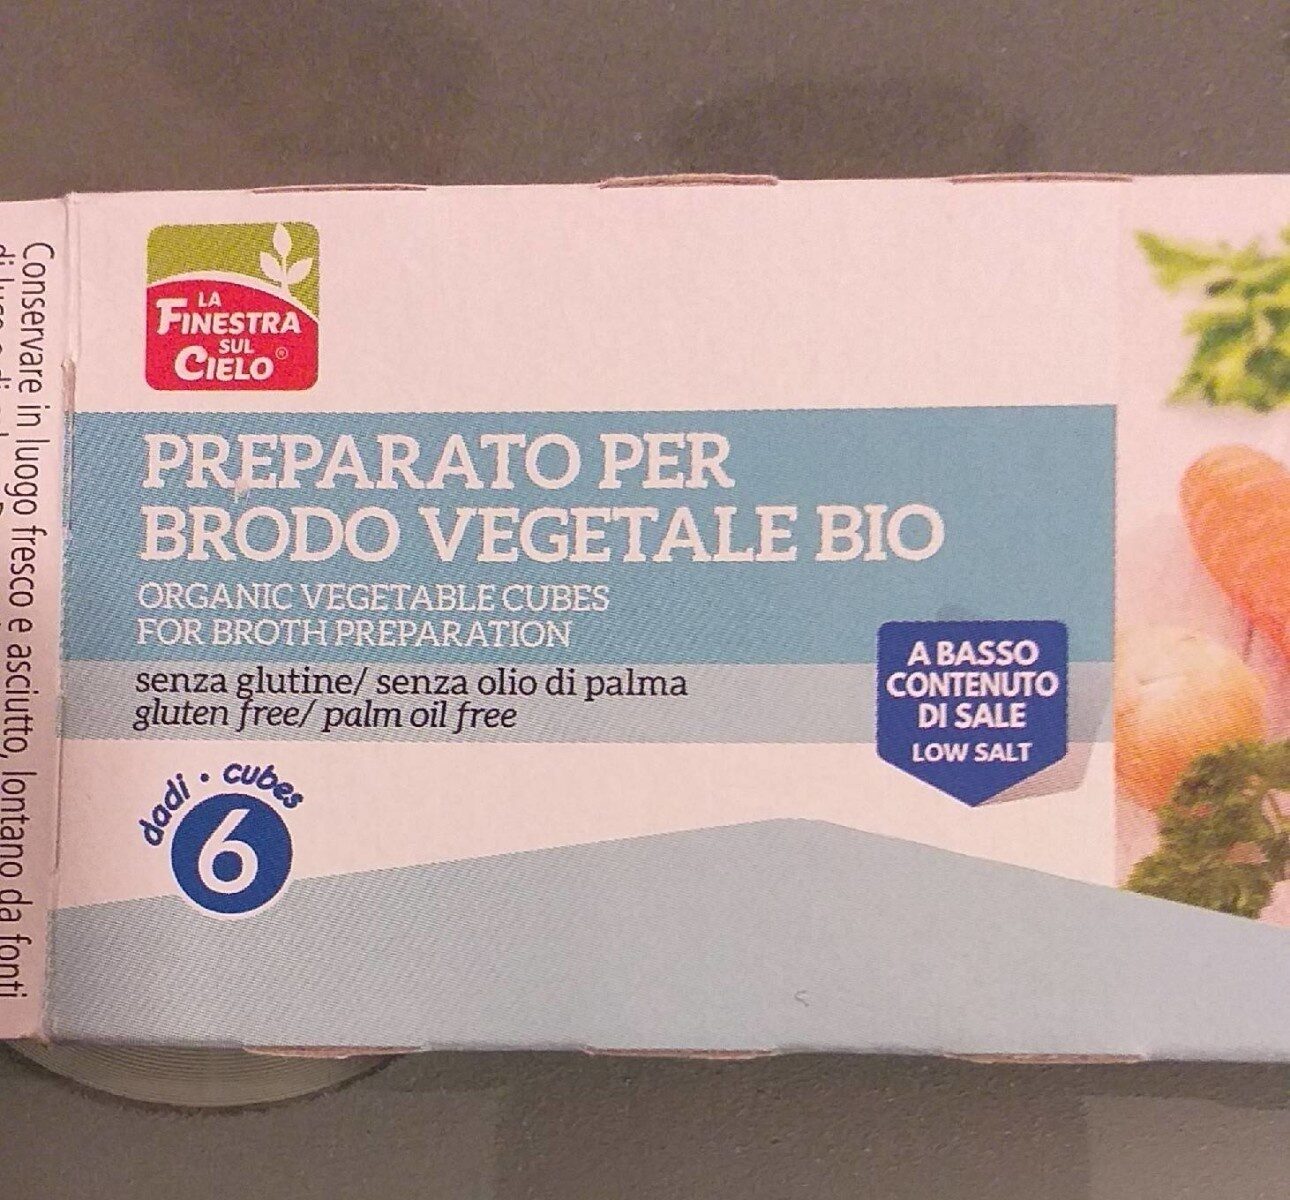 Preparato per brodo vegetale - Product - it